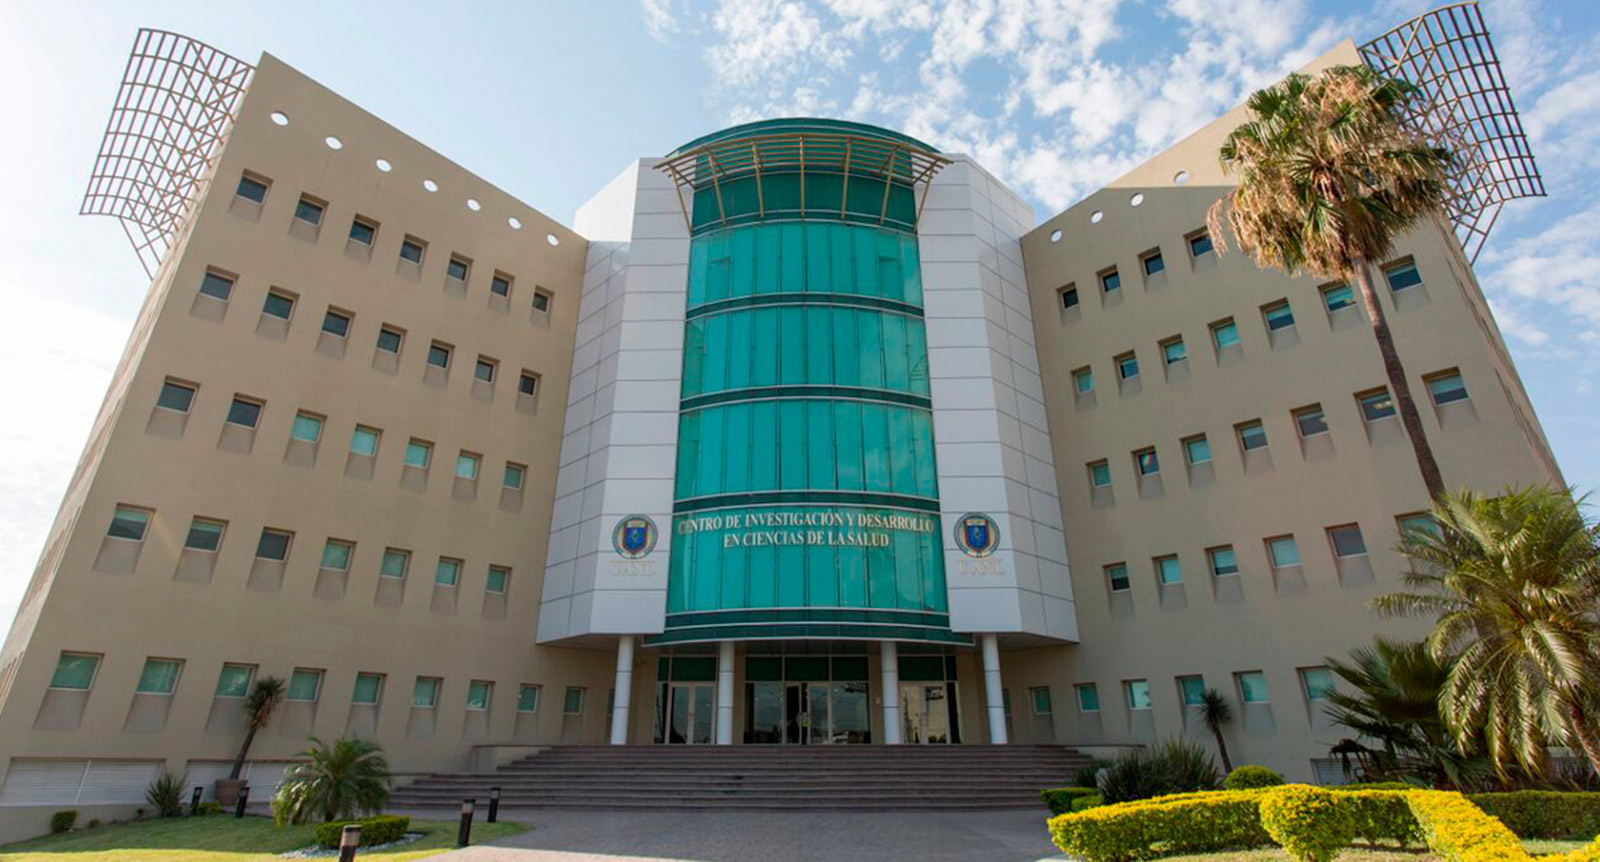 Centro de Investigación y Desarrollo en Ciencias de la Salud (CIDICS)